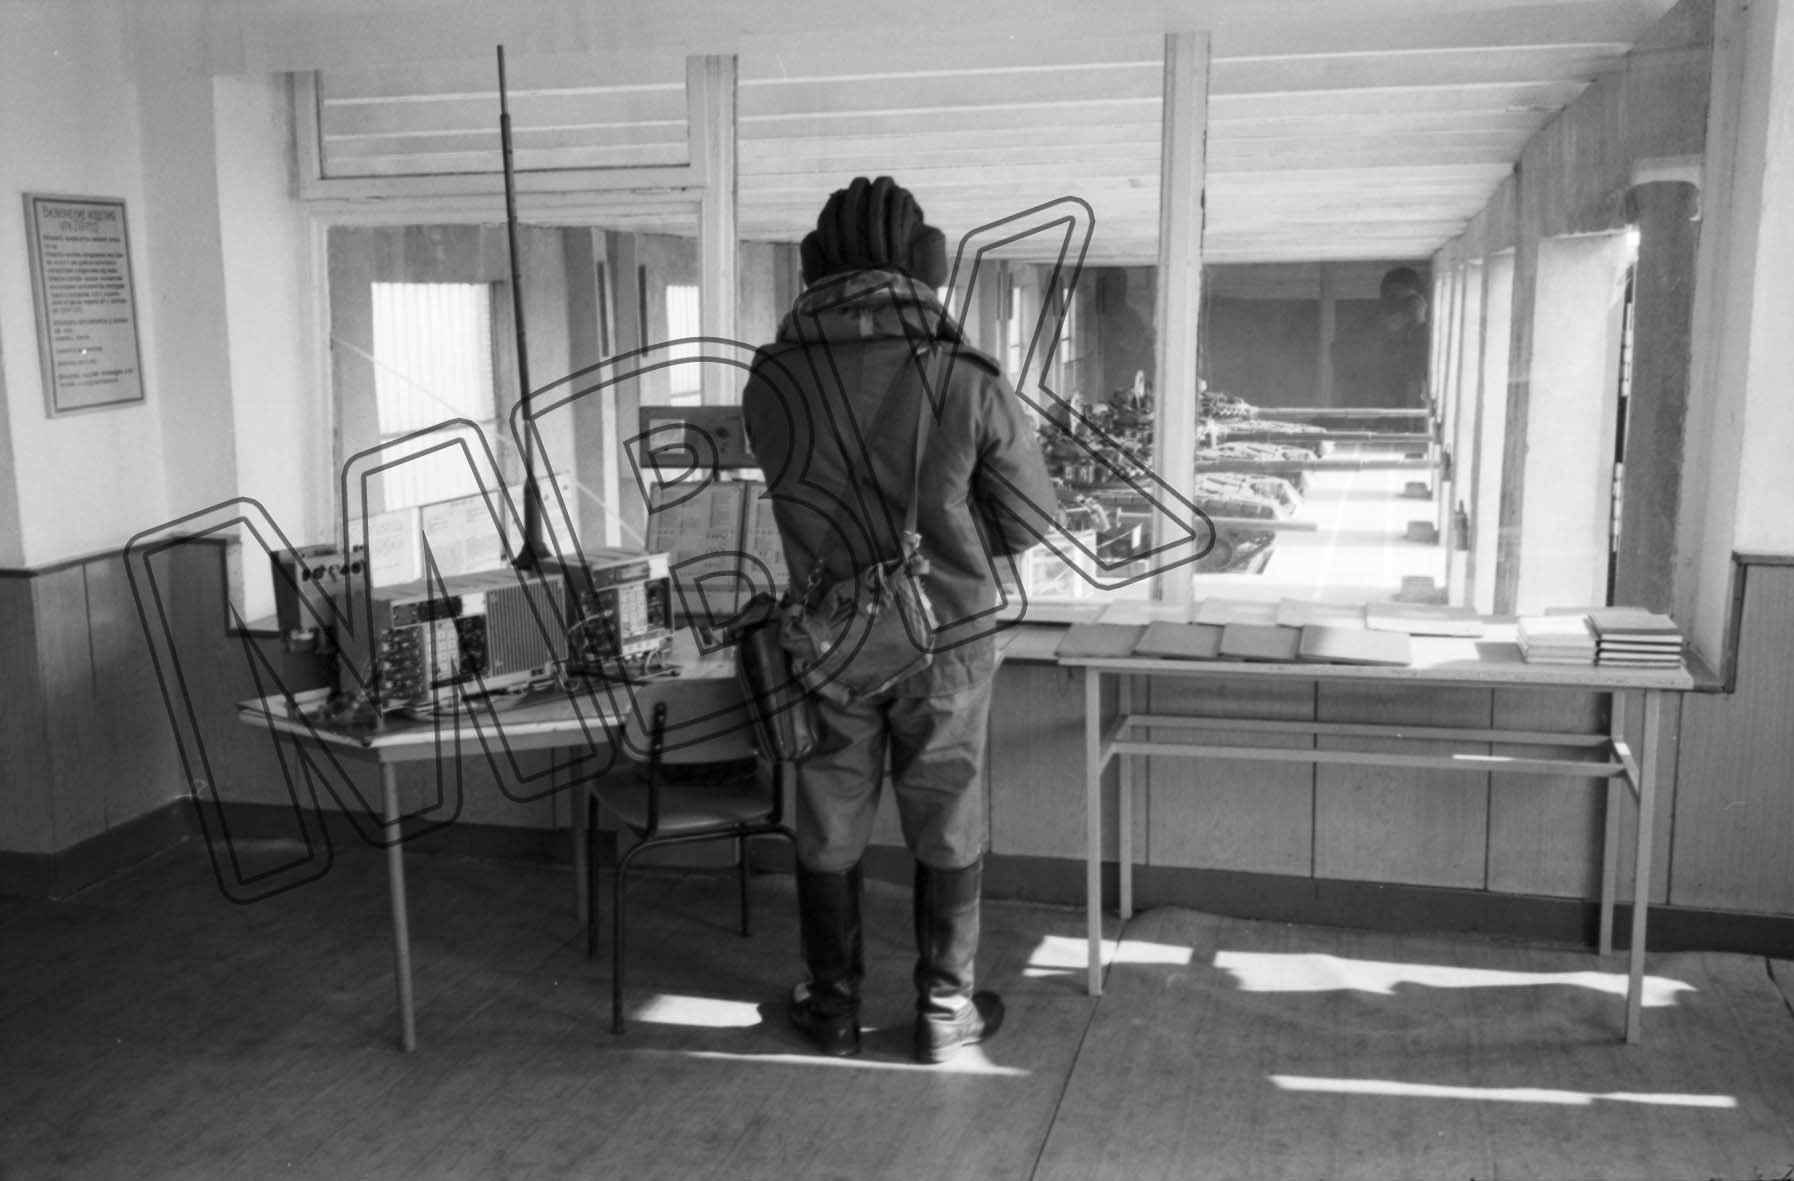 Fotografie: Ausbildung in einer Panzerhalle, Altengrabow, 28. April 1992 (Museum Berlin-Karlshorst RR-P)